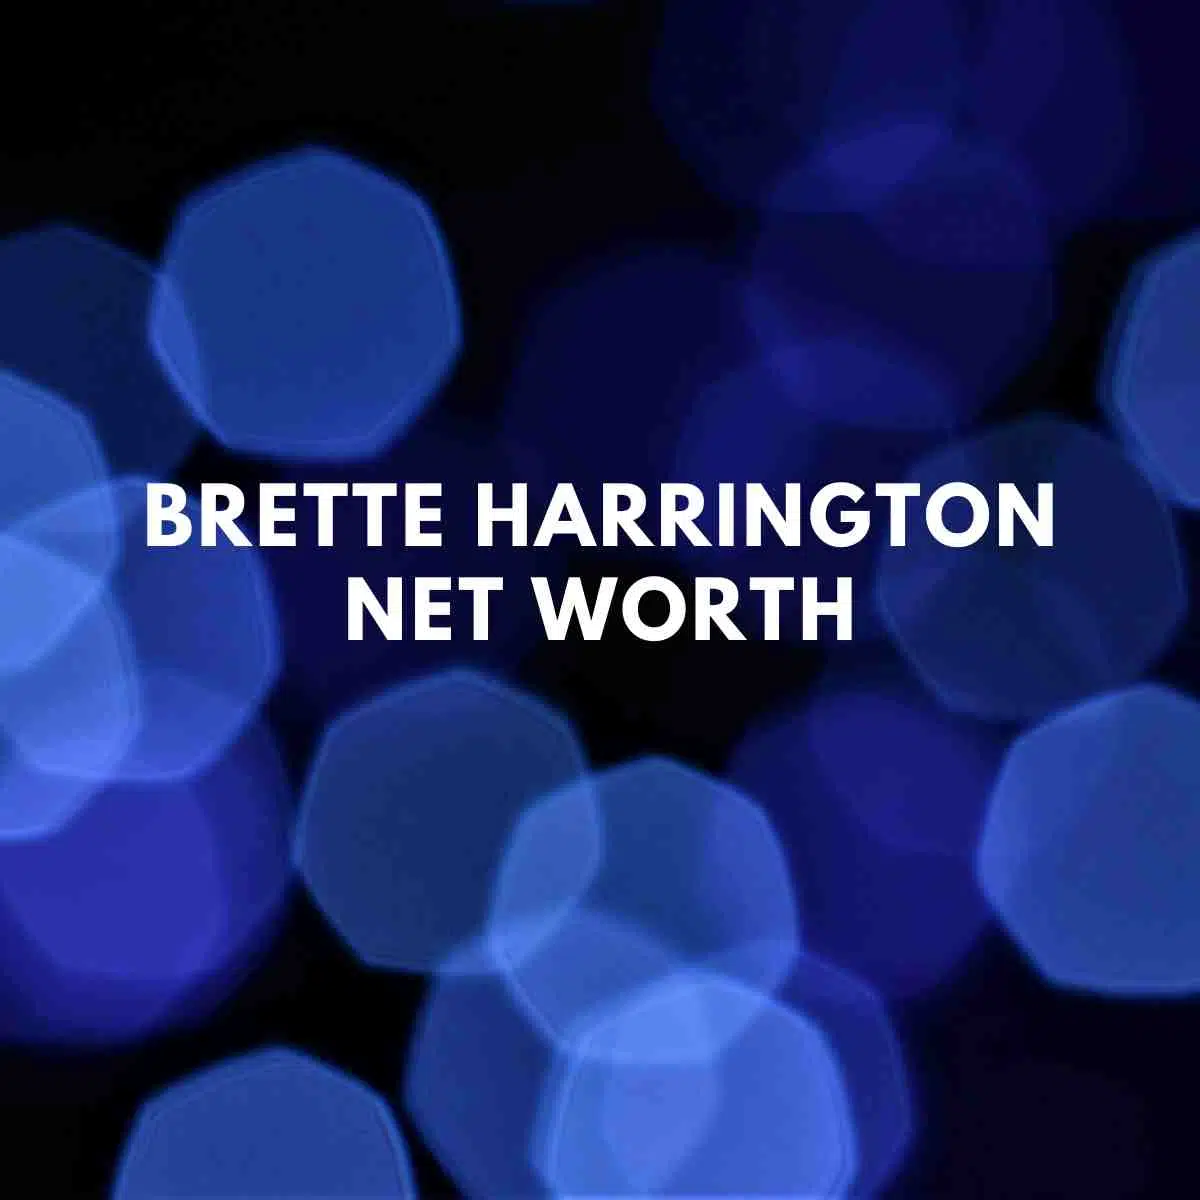 Brette Harrington net worth